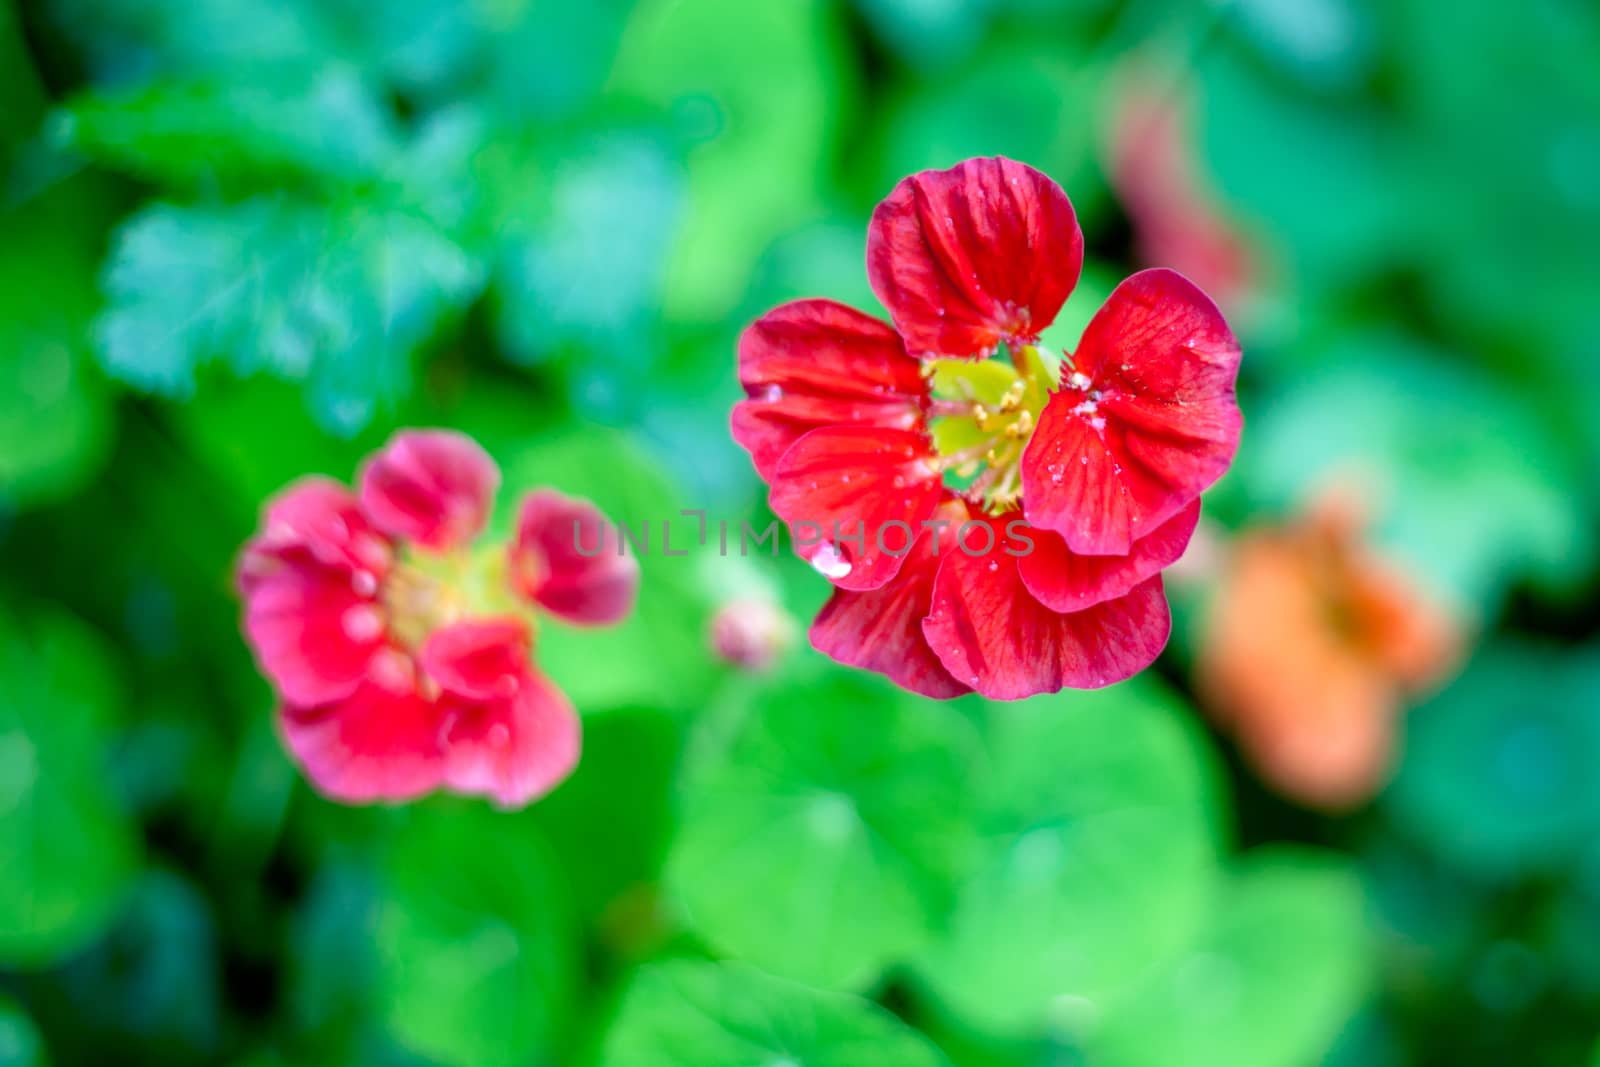 Red flowers by foaloce